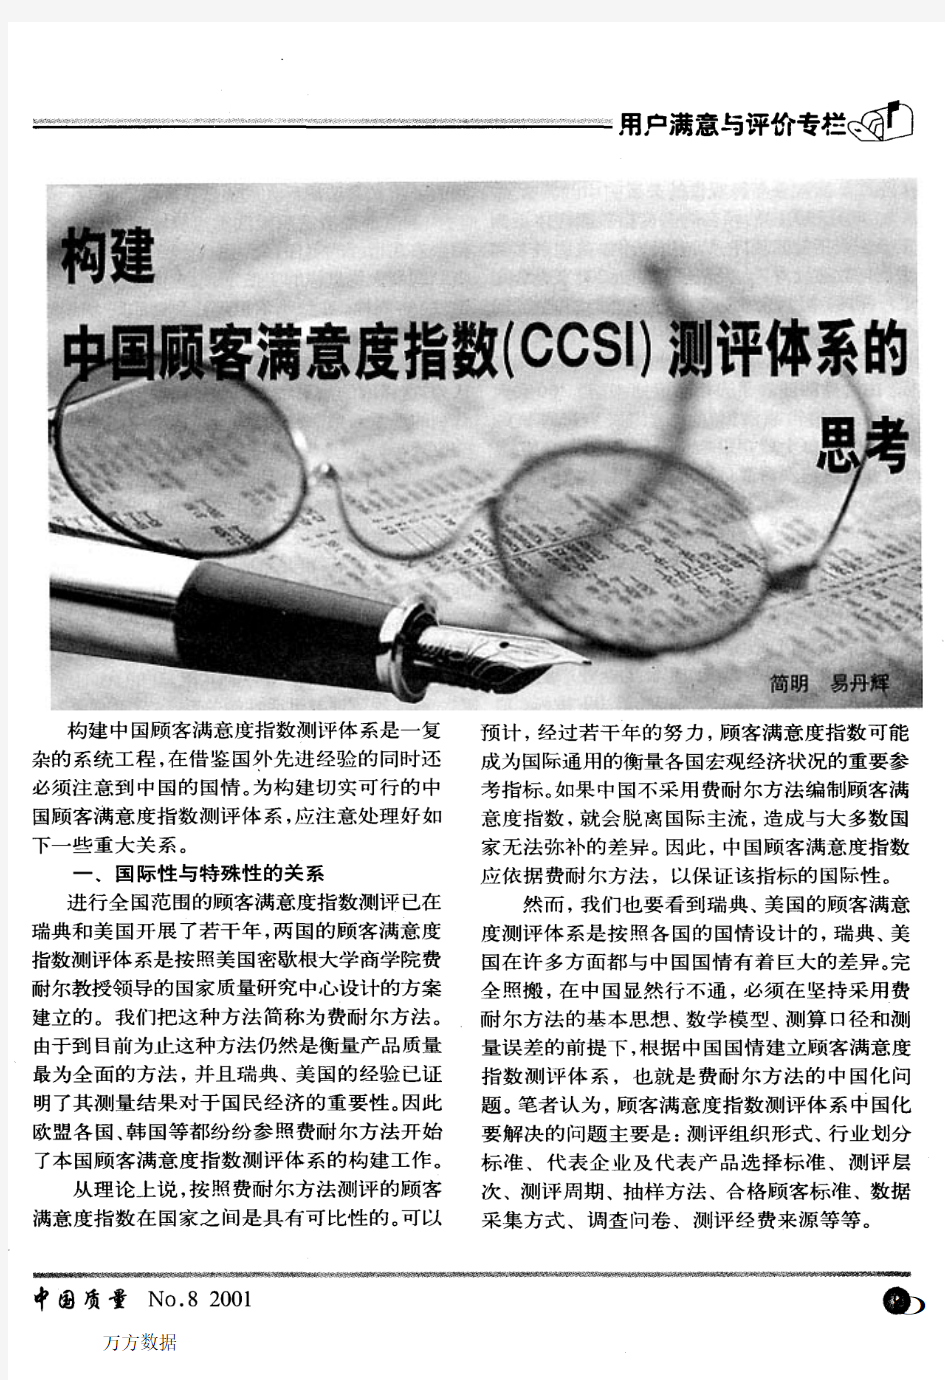 中国顾客满意度指数(CCSI)测评体系的思考